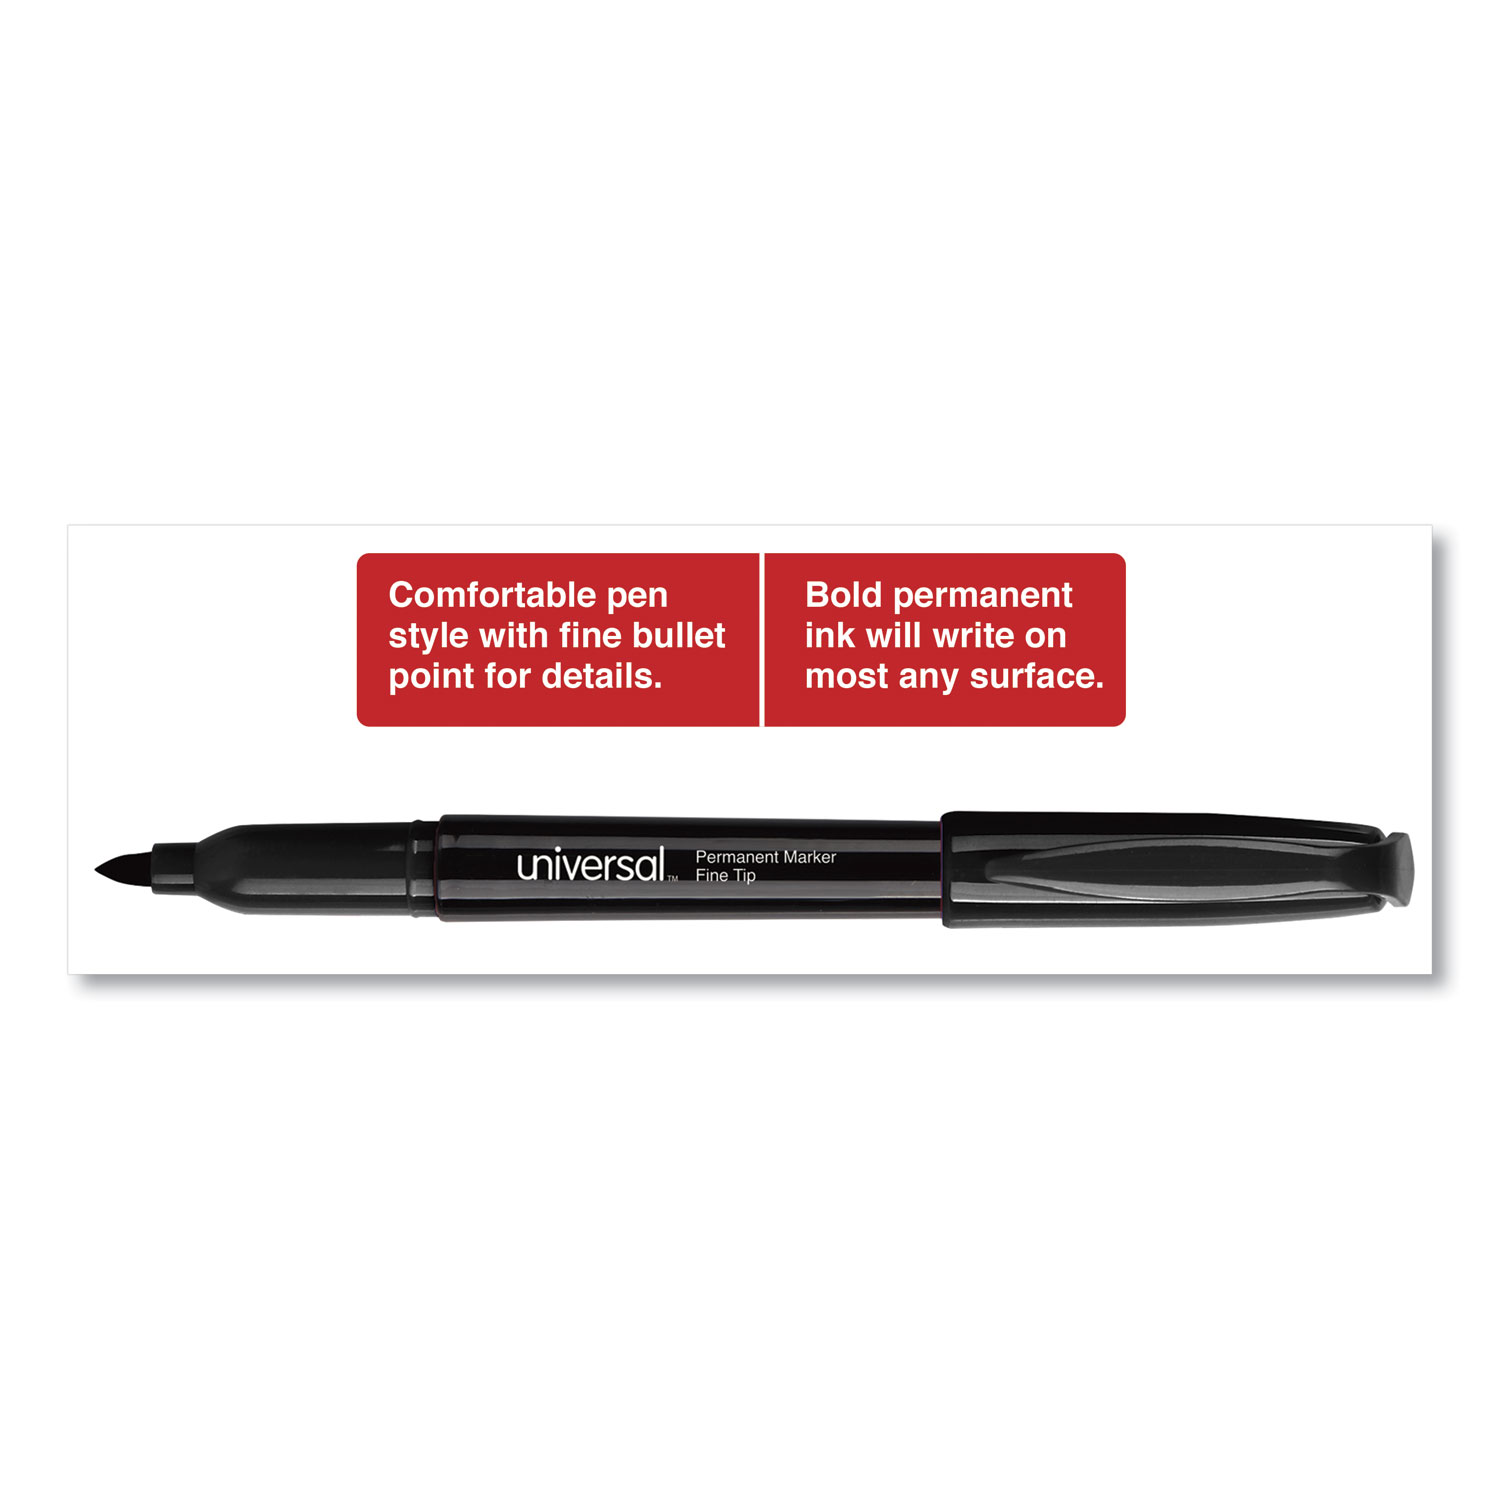 Tru Red Pen Style Dry Erase Marker, Fine Bullet Tip, Black, 4/Pack